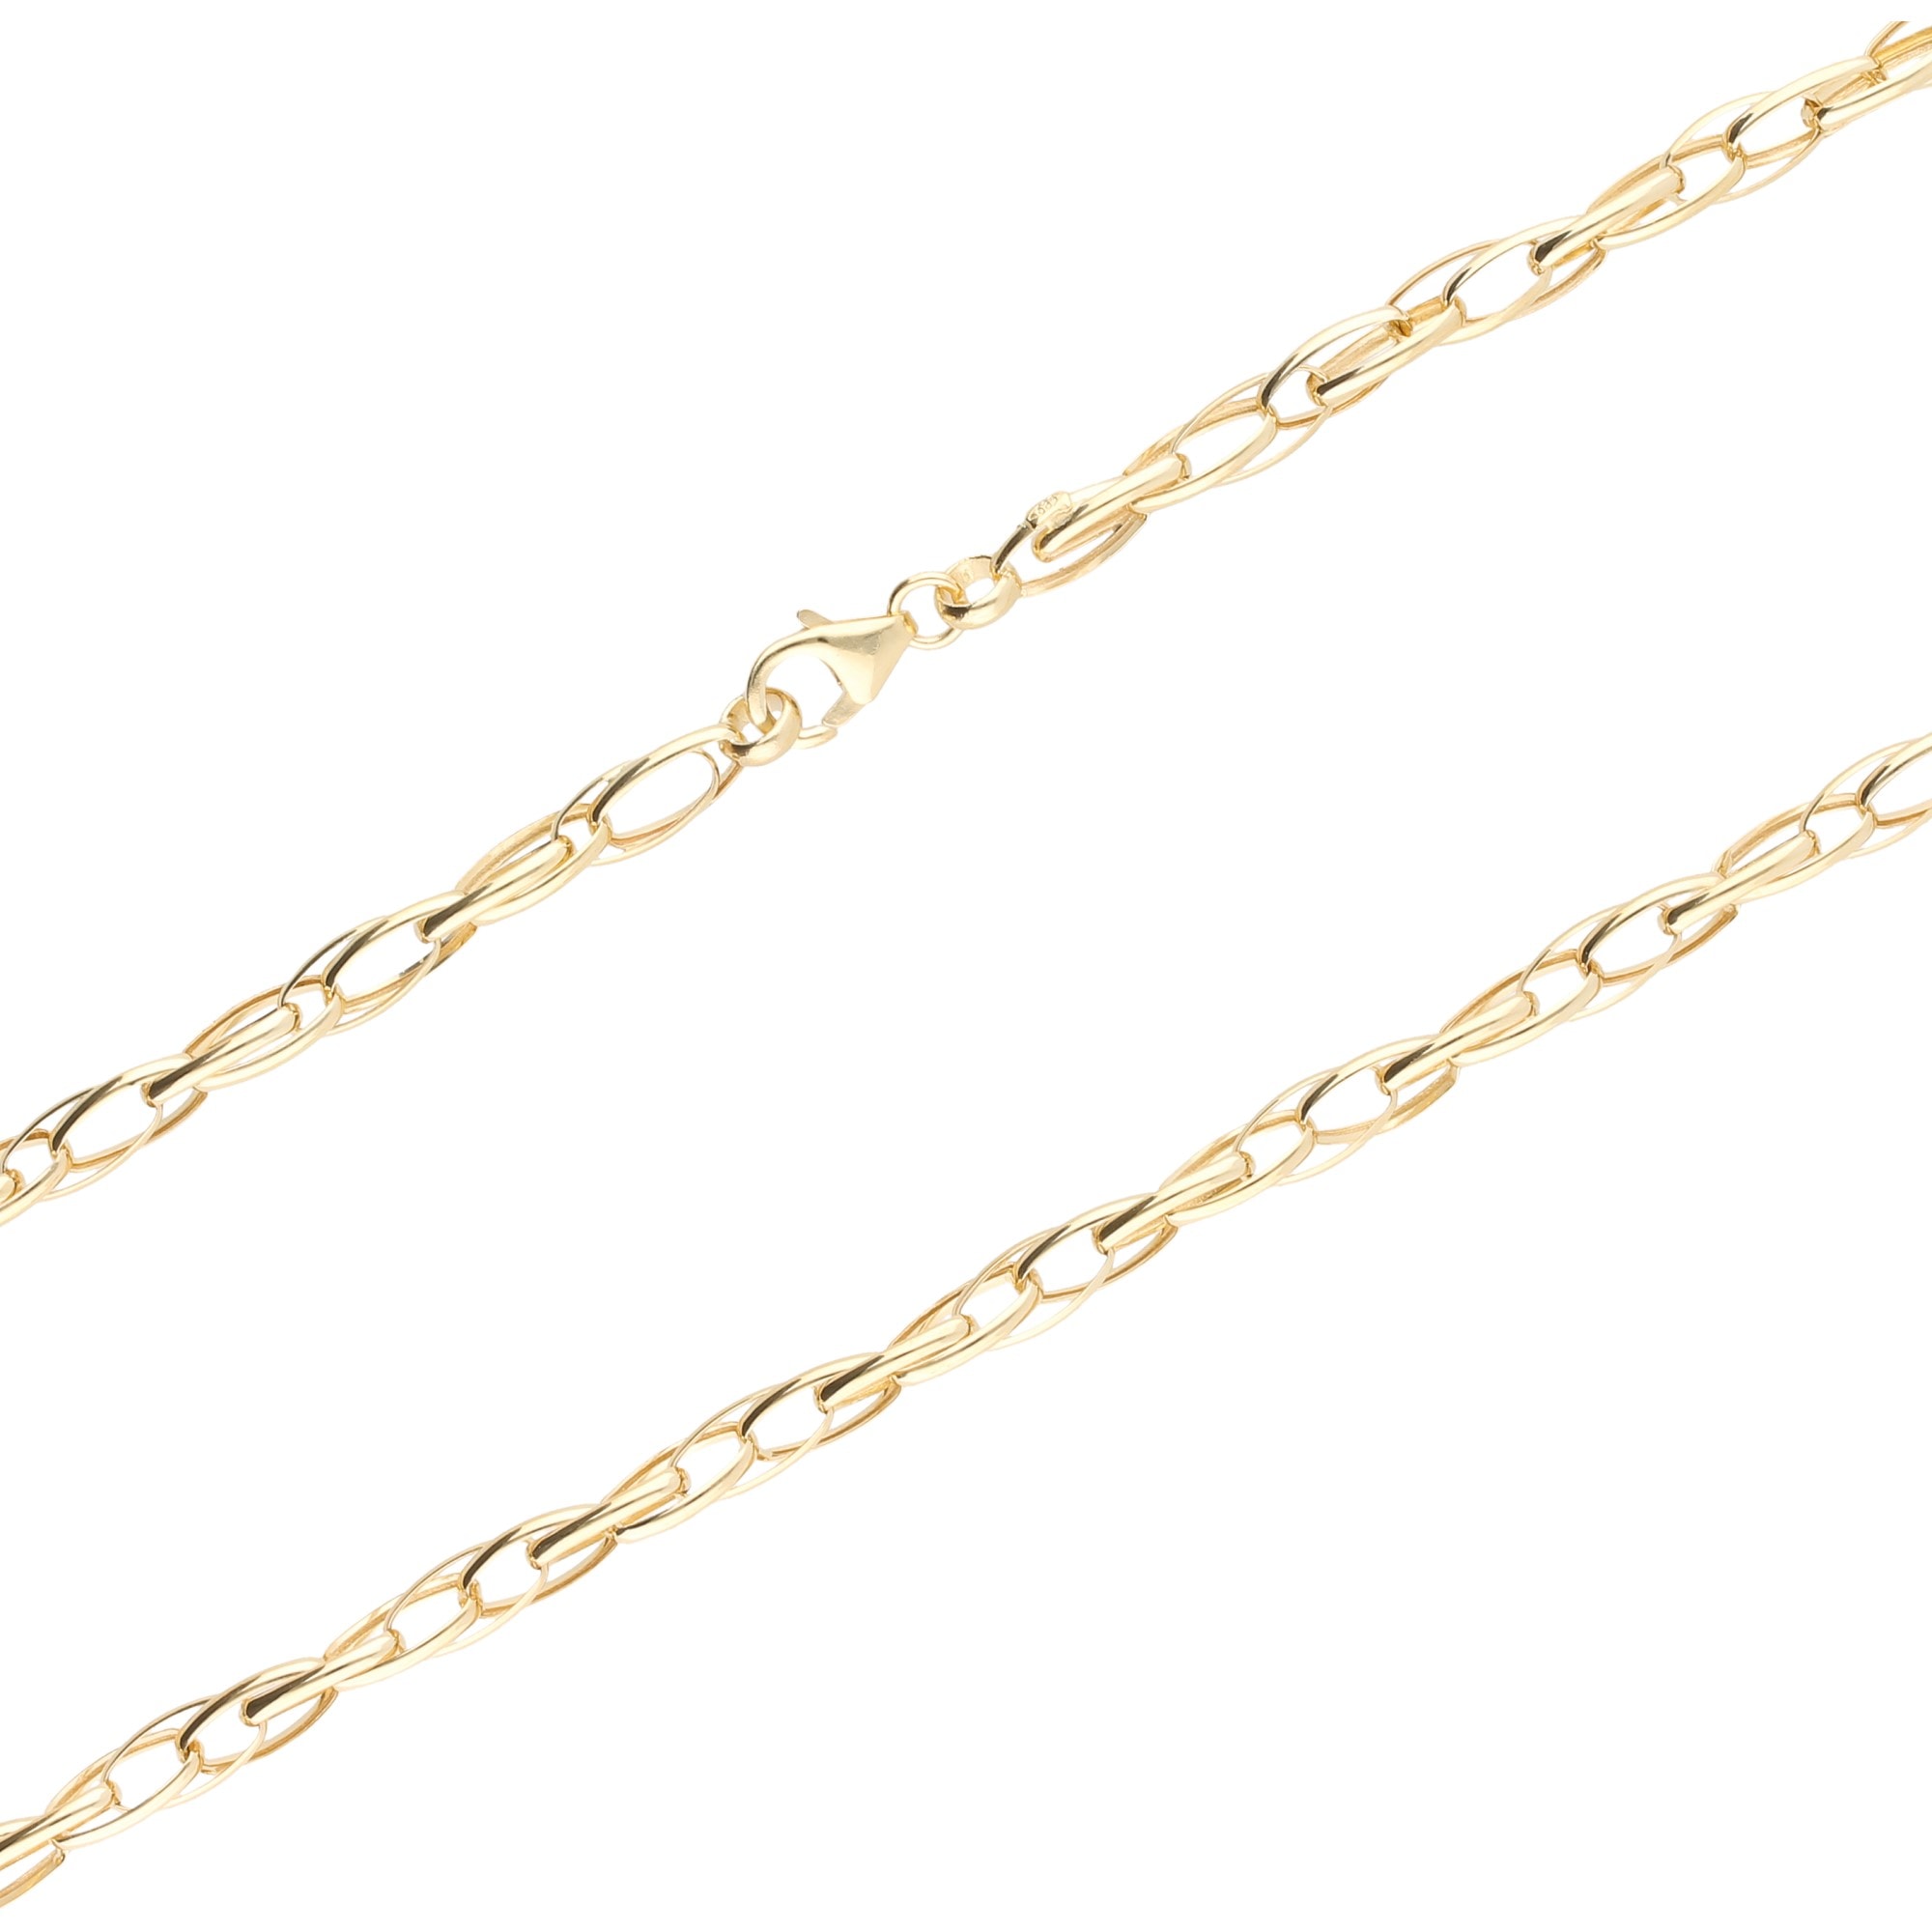 Gold im Merano bestellen OTTO Luigi »Collier Doppelankerkette, Goldkette Shop 585« Online